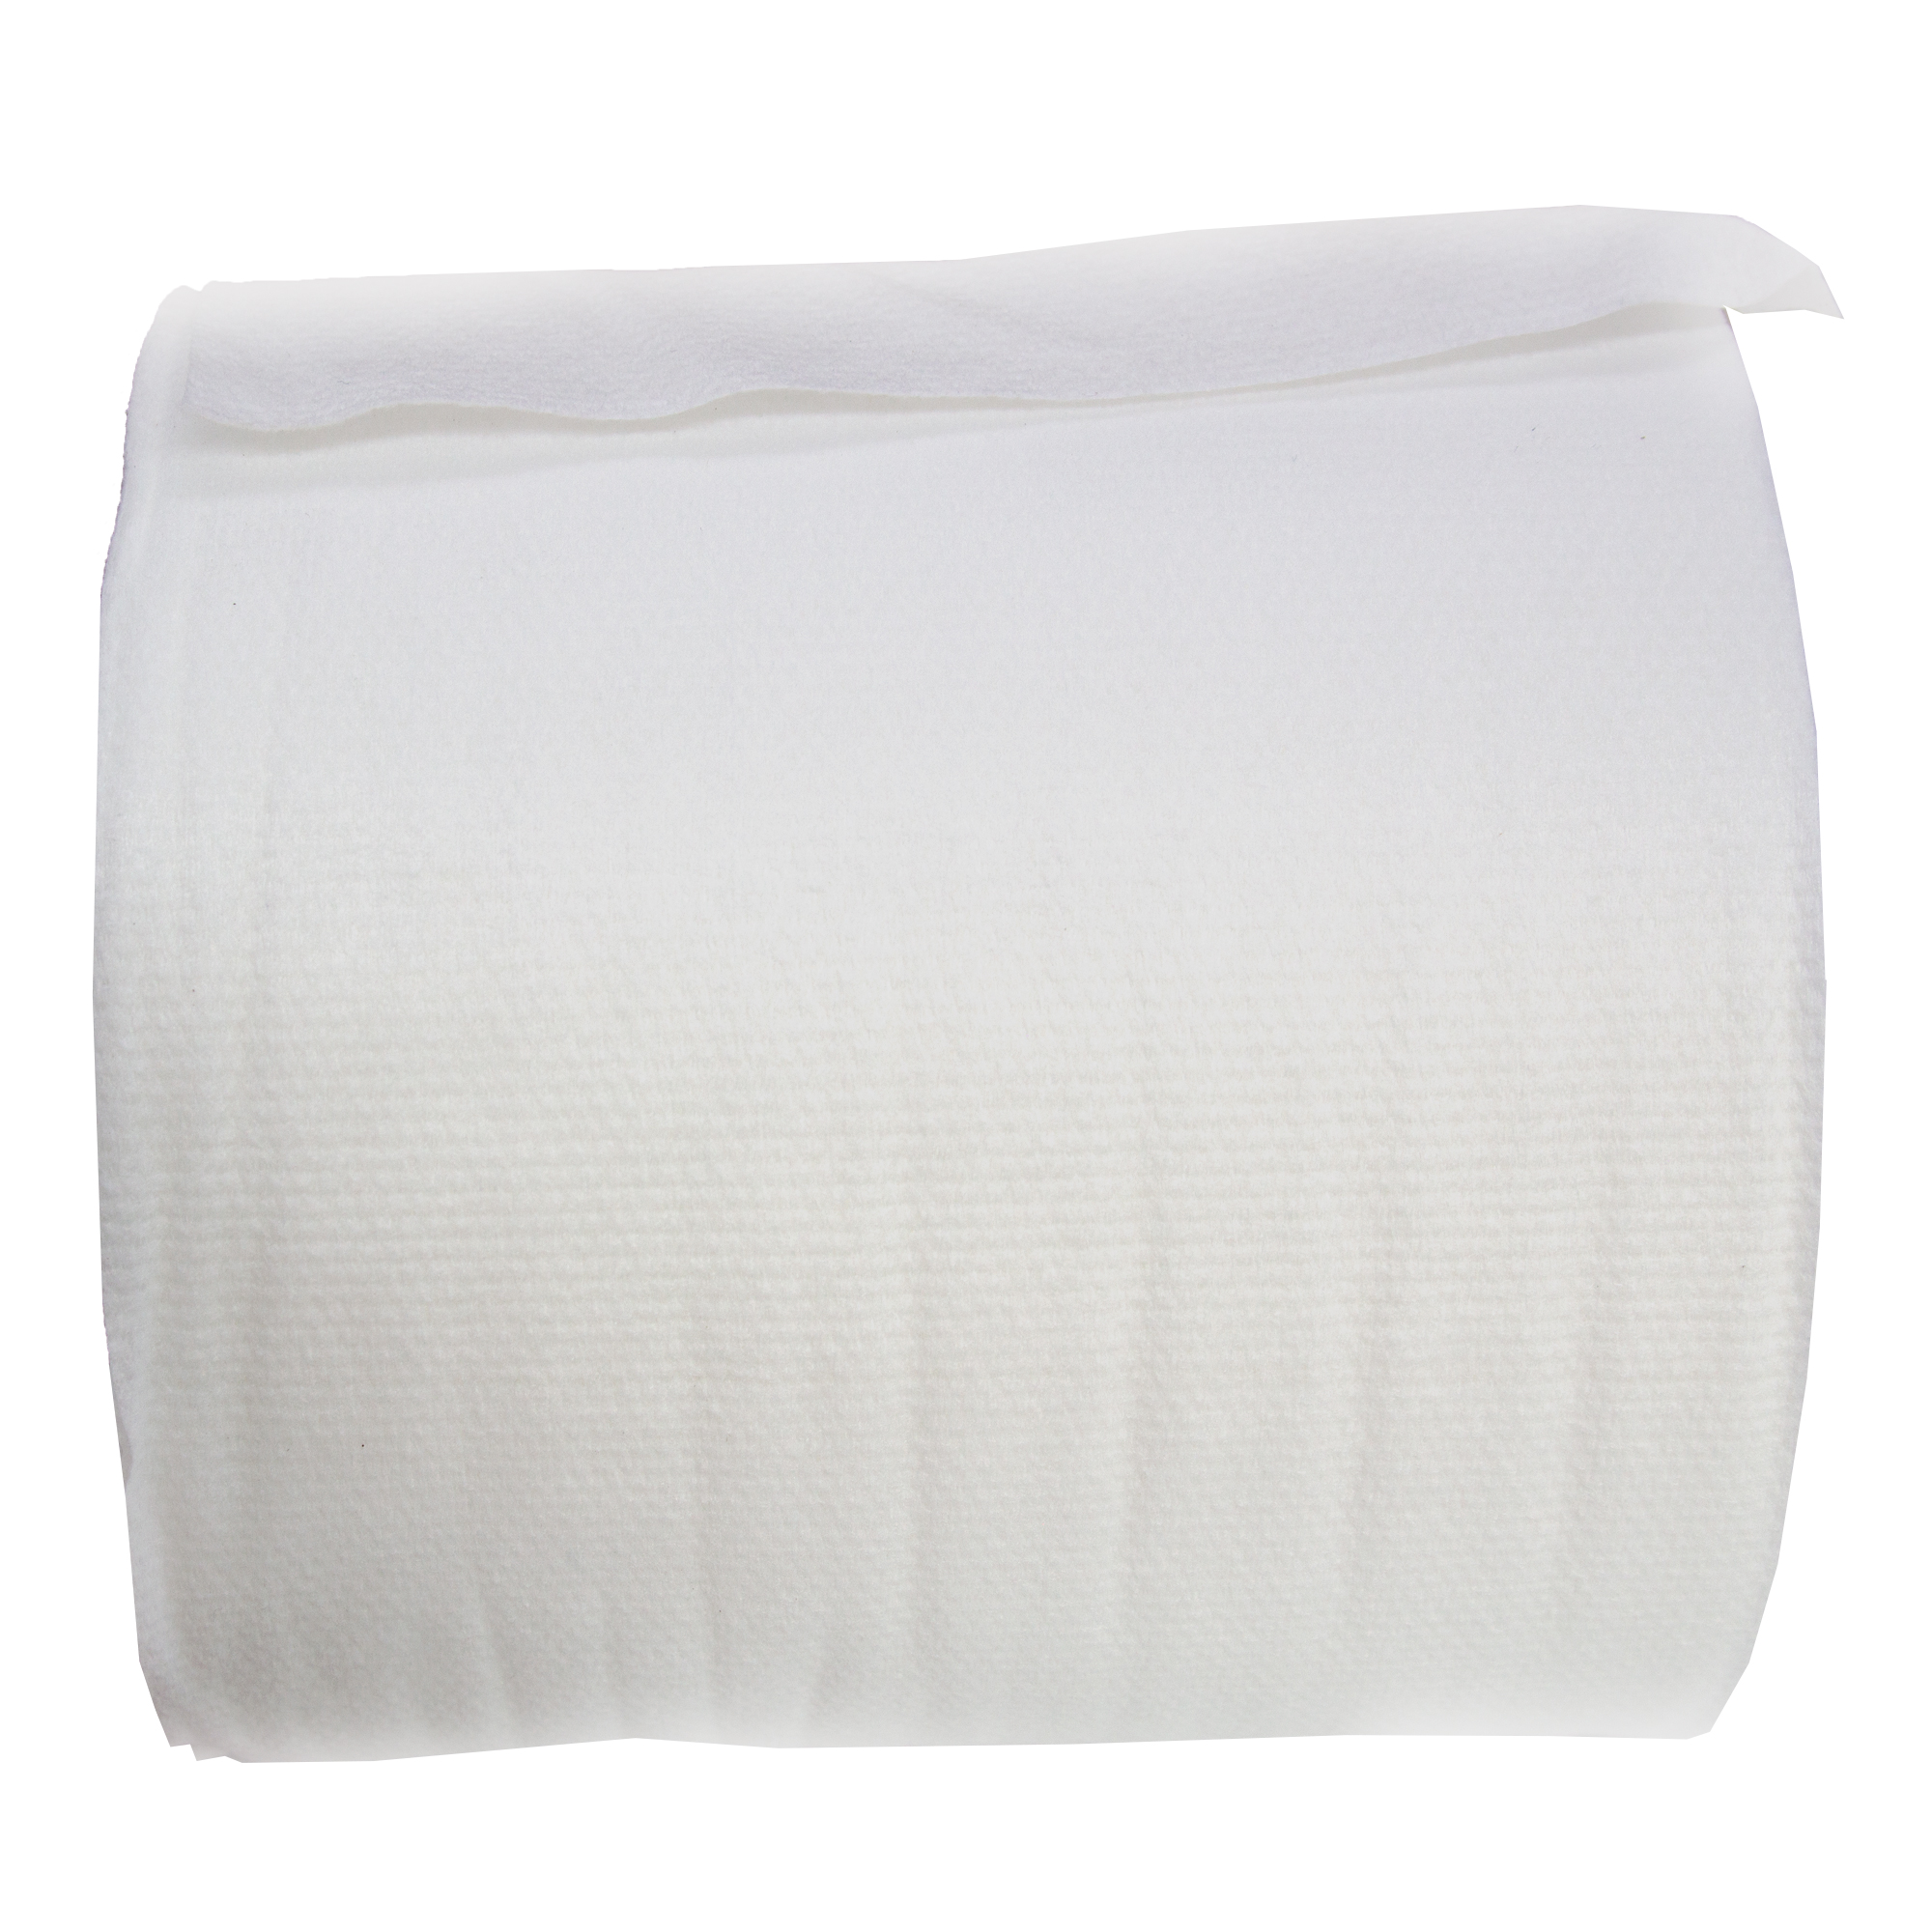 WypAll 7753 Wettask fusselarme Reinigungstücher für Lösungsmittel, weiß, 30,5 cm breit, 6 x 120 Tücher